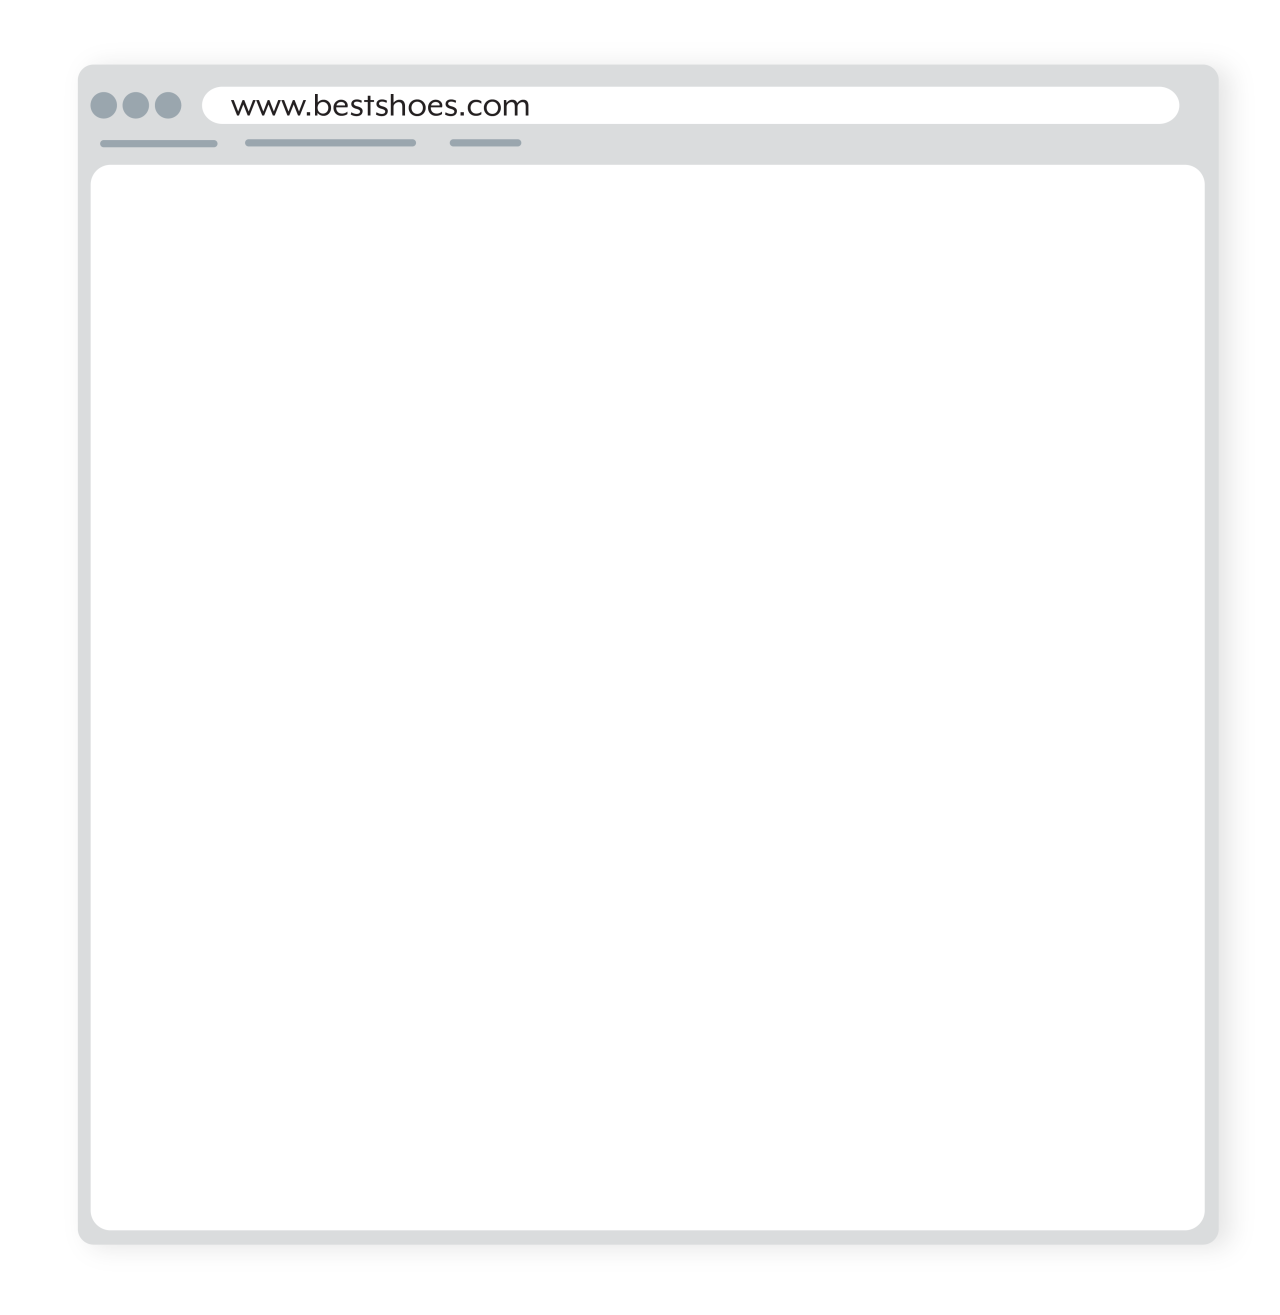 blank webpage with URL bestshoes.com